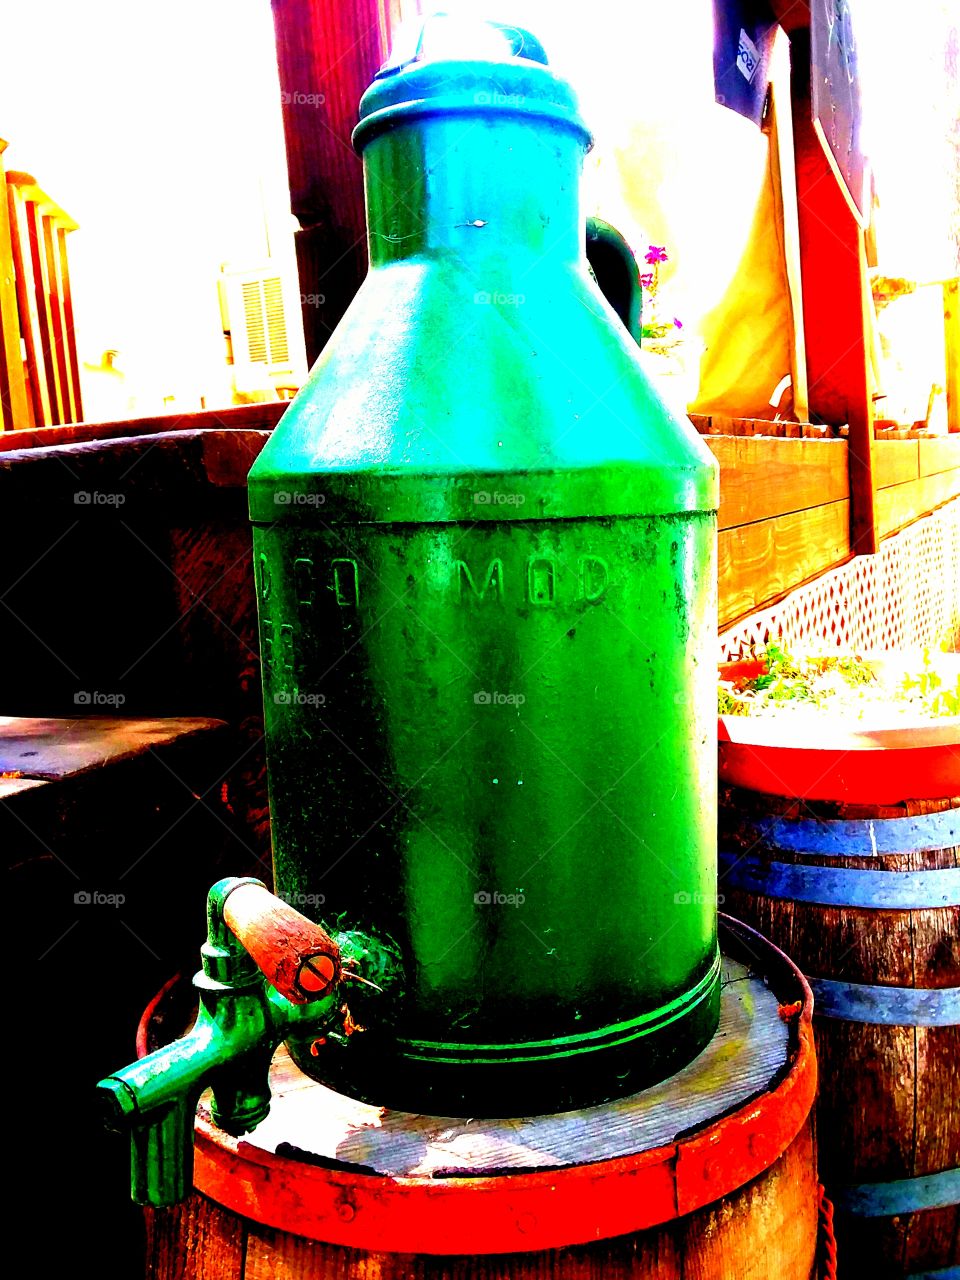 green jug